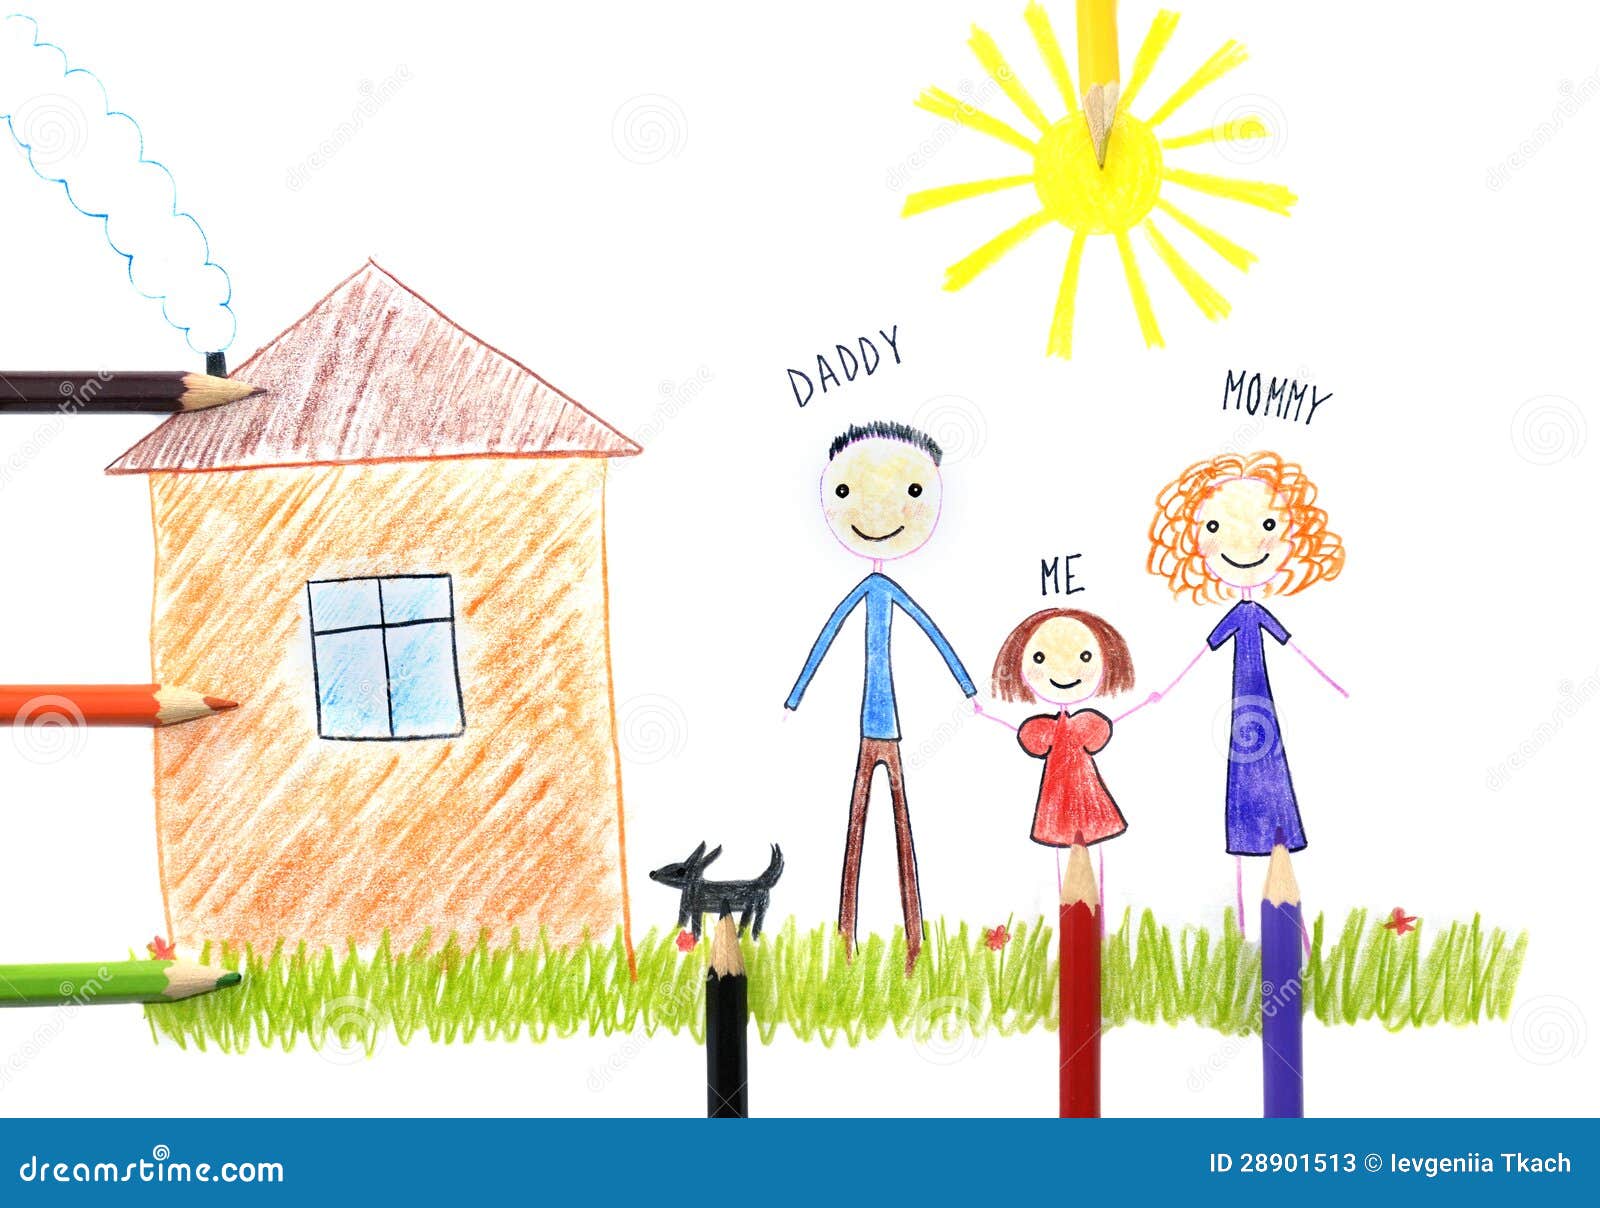 Нарисовать будущую семью дом и домашнее хозяйство. Детский рисунок семья дом. Рисунок домашнее хозяйство в семье. Будущая семья дом и домашнее хозяйство. Рисунок семьи дома и домашнего хозяйства.